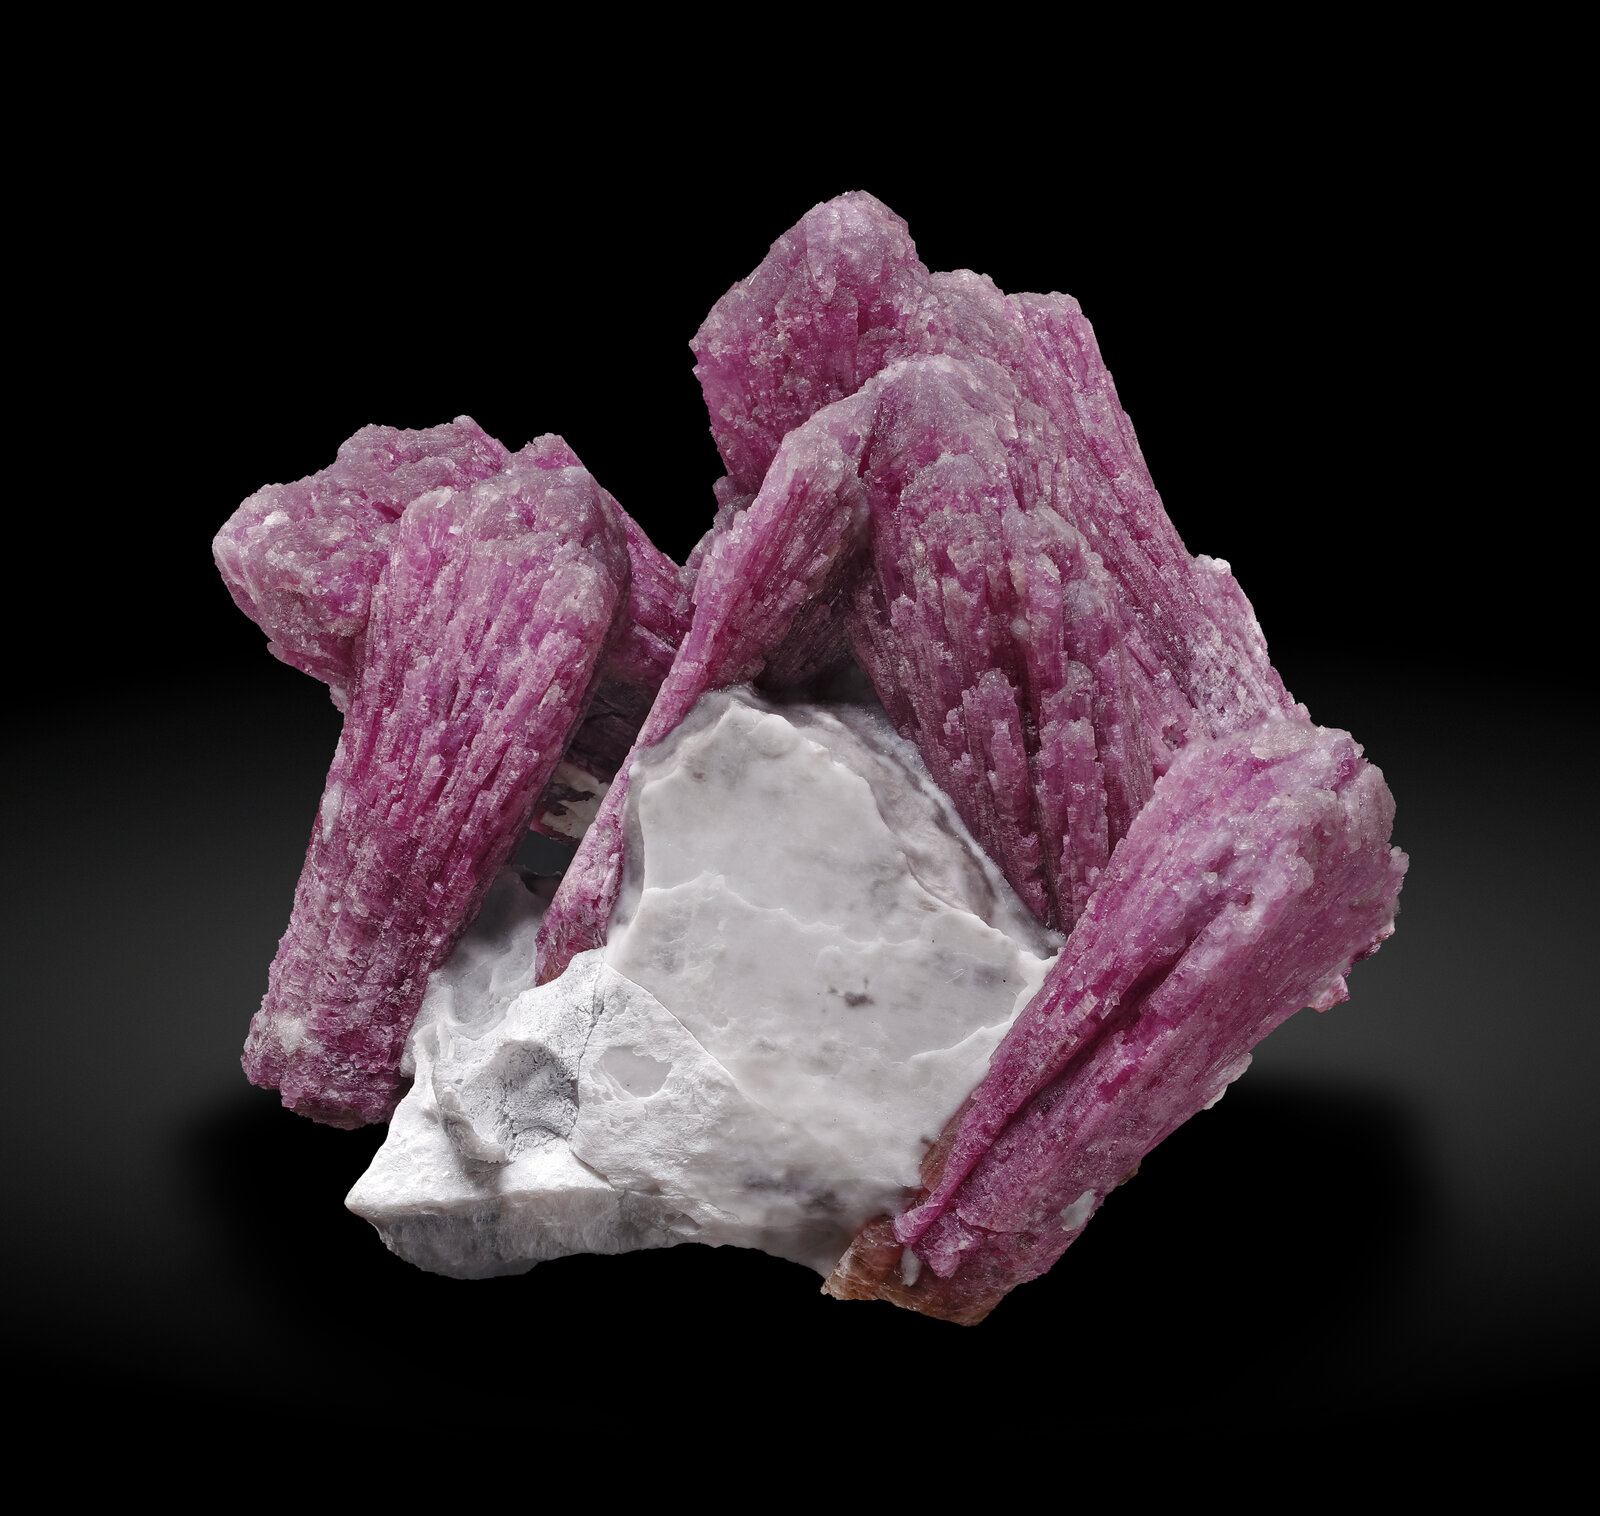 specimens/s_imagesAP6/Elbaite-EGH67AP6_020_f.jpg